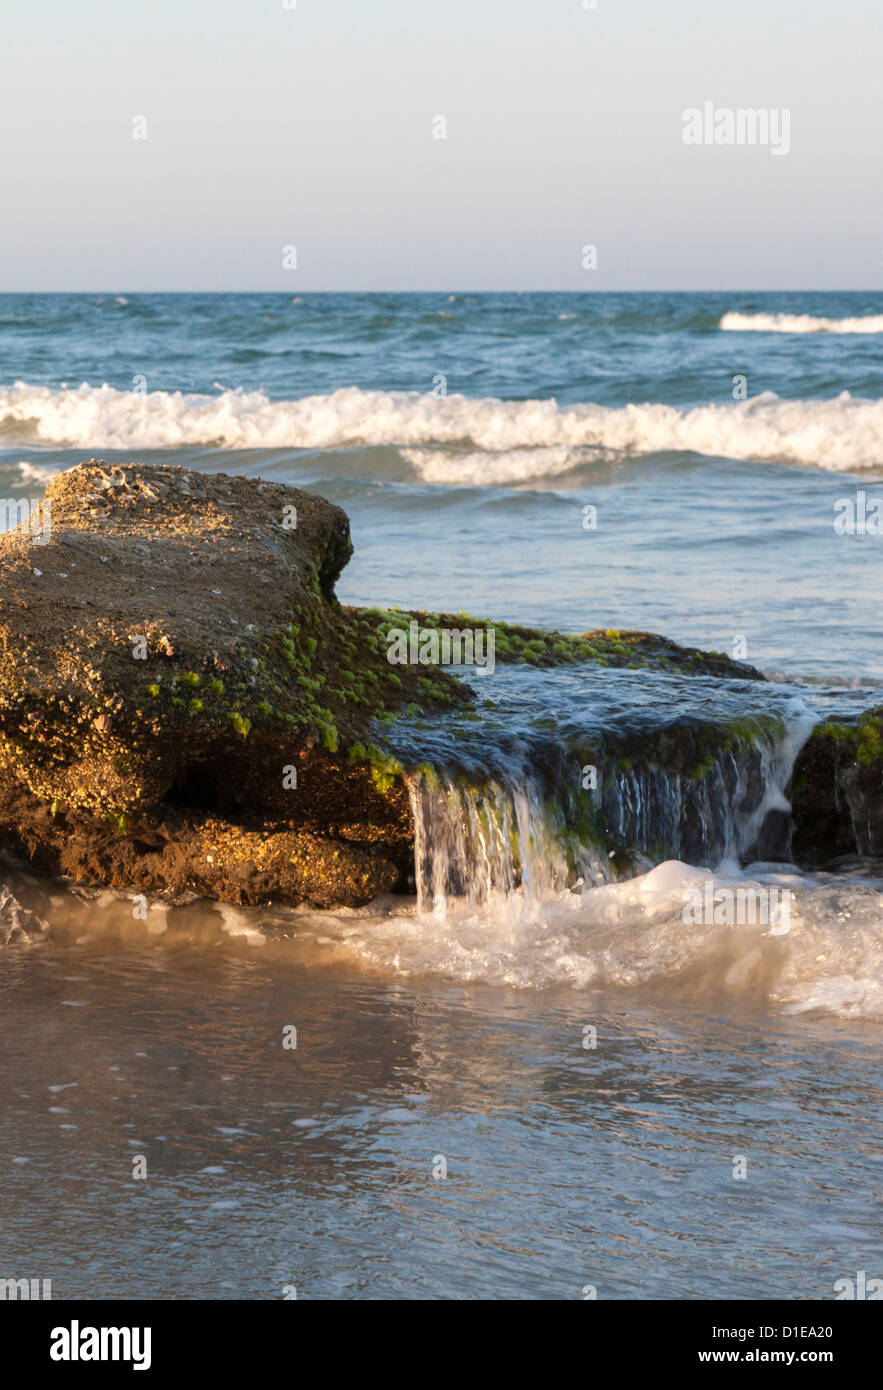 Coquina rock formations le long des côtes de l'océan Atlantique à Washington Oaks Gardens State Park en Floride, USA Banque D'Images